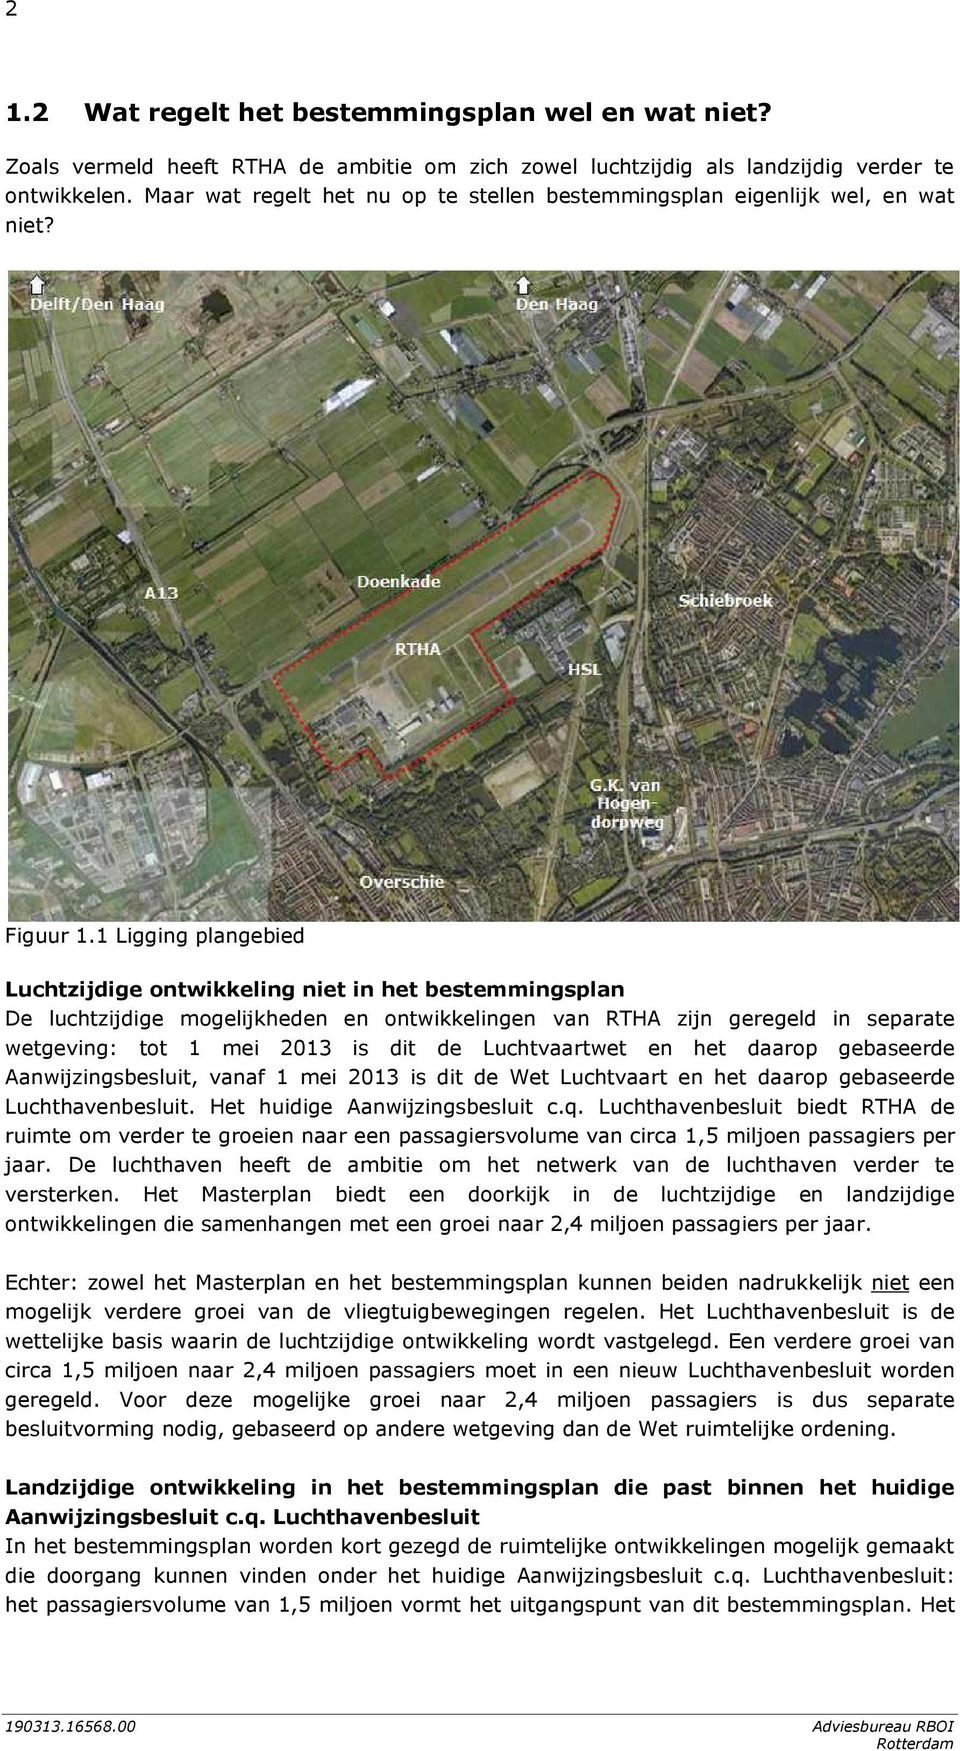 1 Ligging plangebied Luchtzijdige ontwikkeling niet in het bestemmingsplan De luchtzijdige mogelijkheden en ontwikkelingen van RTHA zijn geregeld in separate wetgeving: tot 1 mei 2013 is dit de